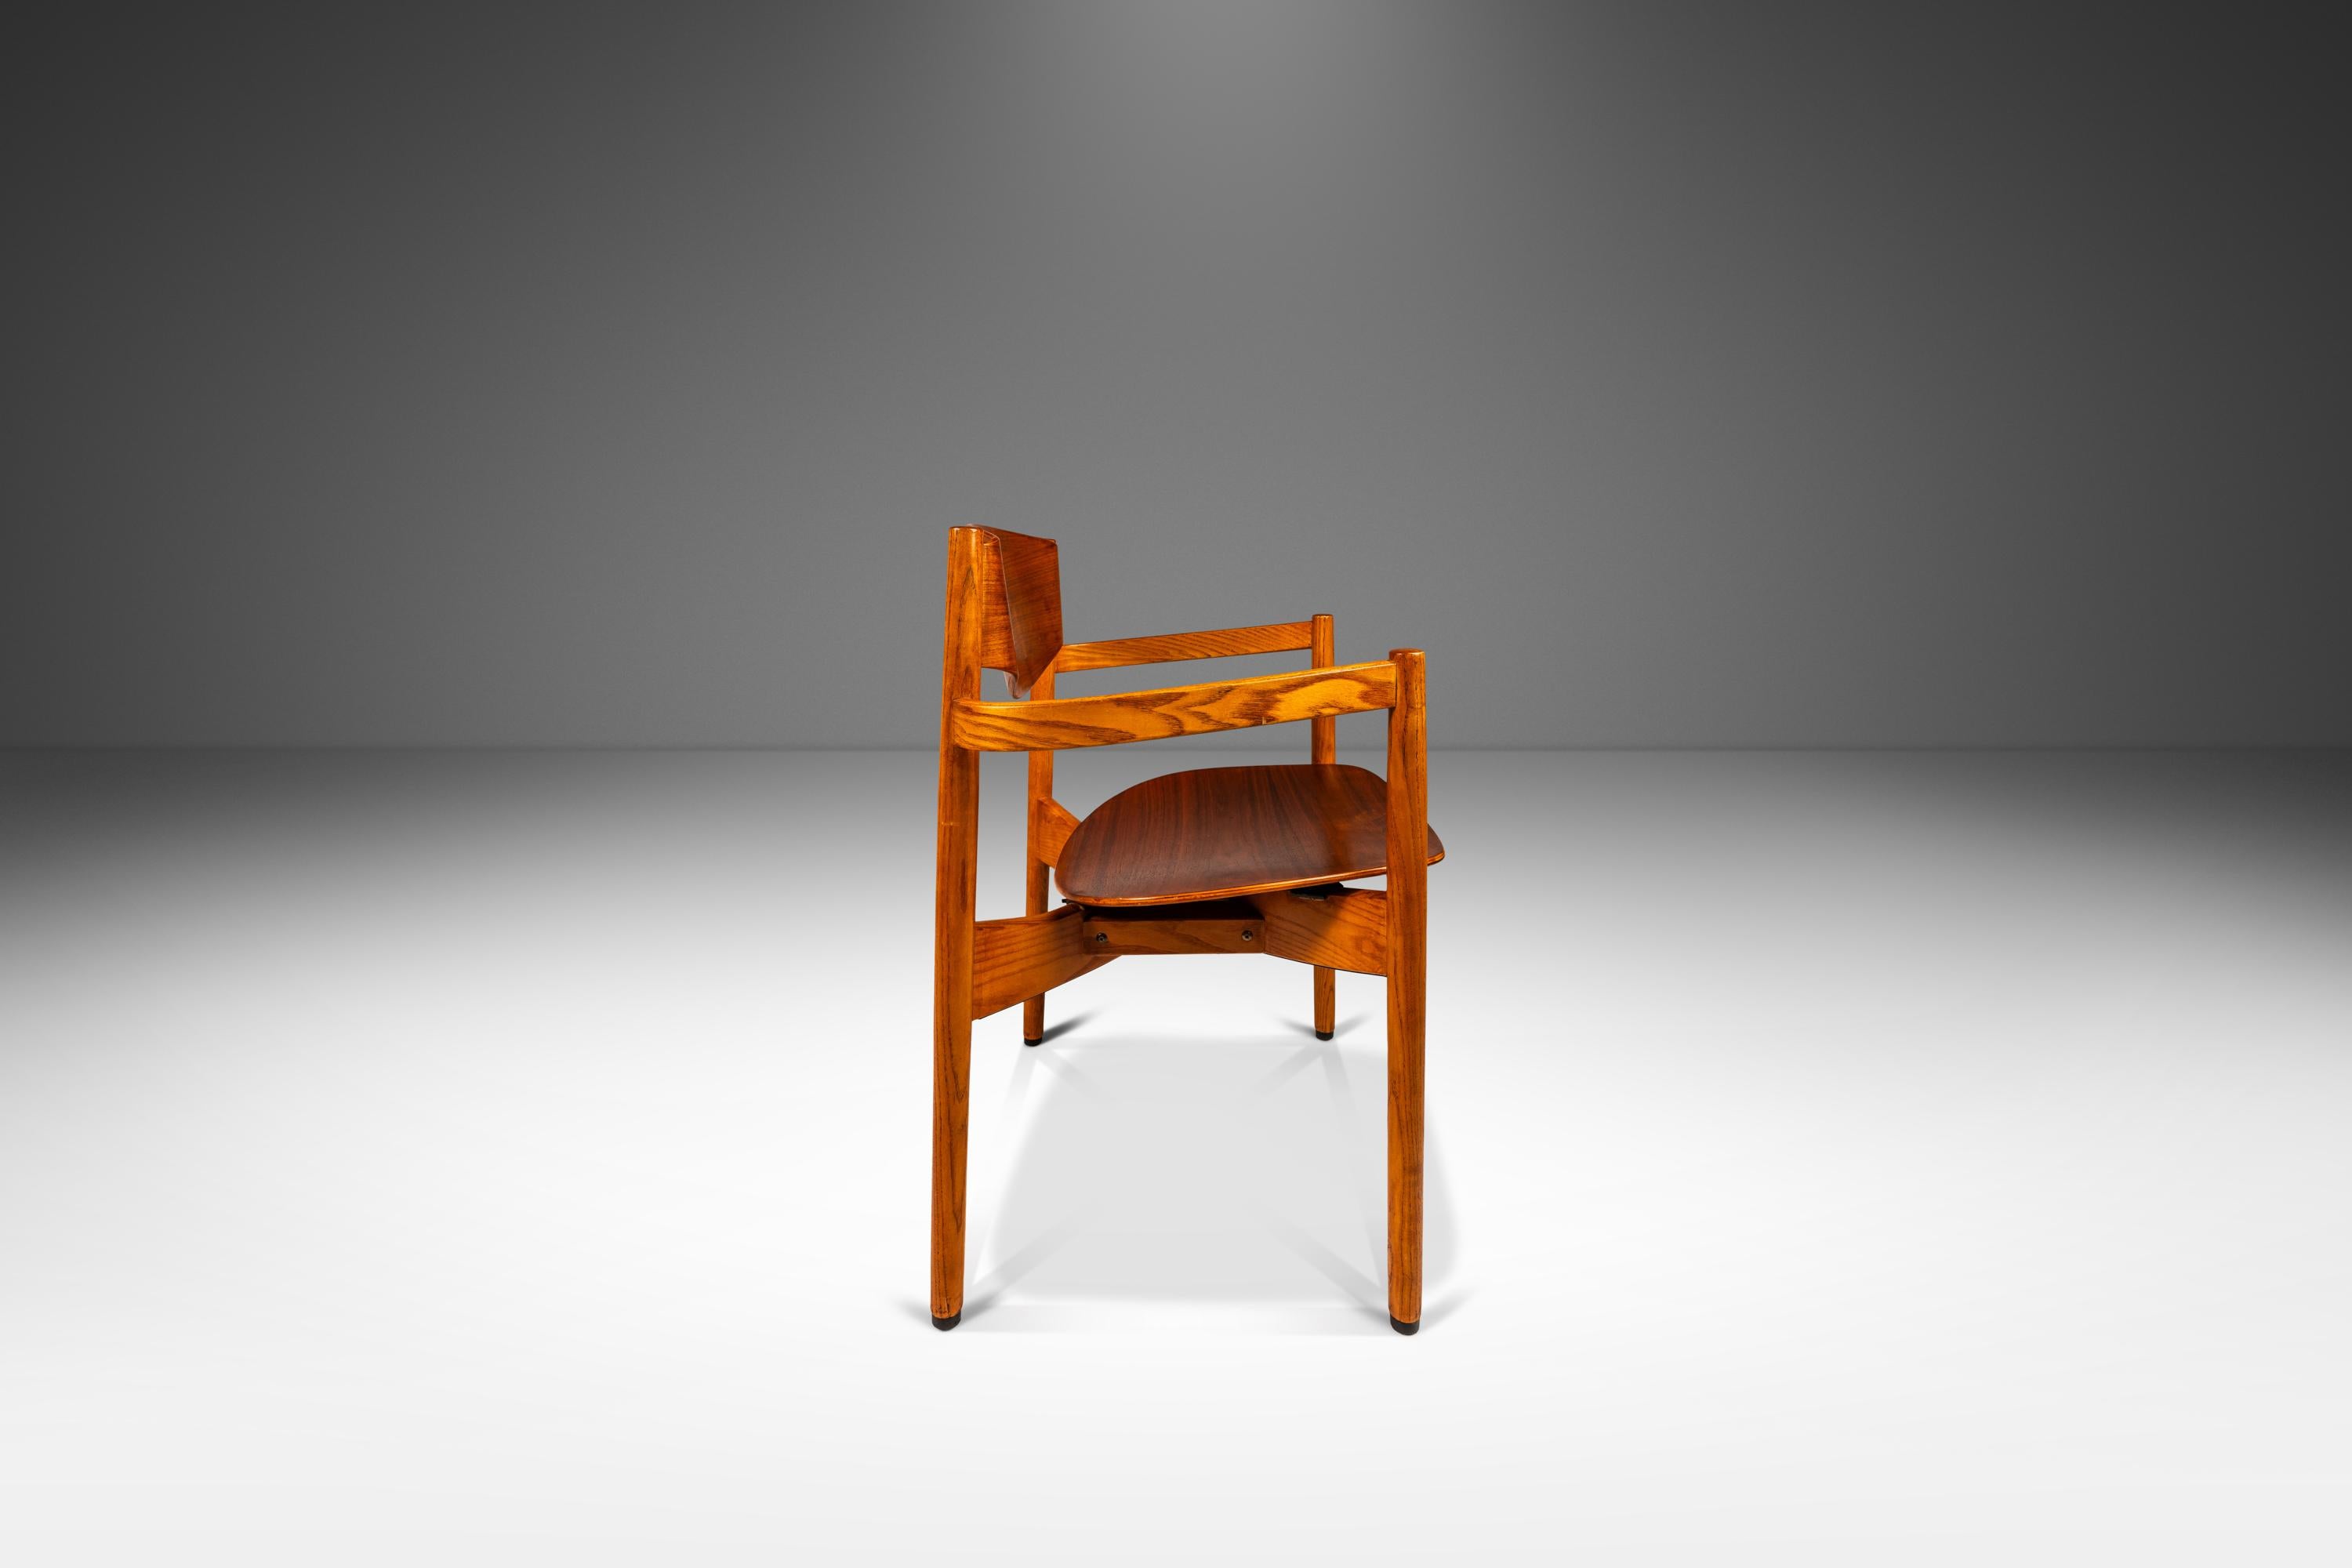 Einzelner Mid-Century Modern Chair in Eiche und Nussbaum  Von Jens Risom, USA, ca. 1960er Jahre (Mitte des 20. Jahrhunderts) im Angebot